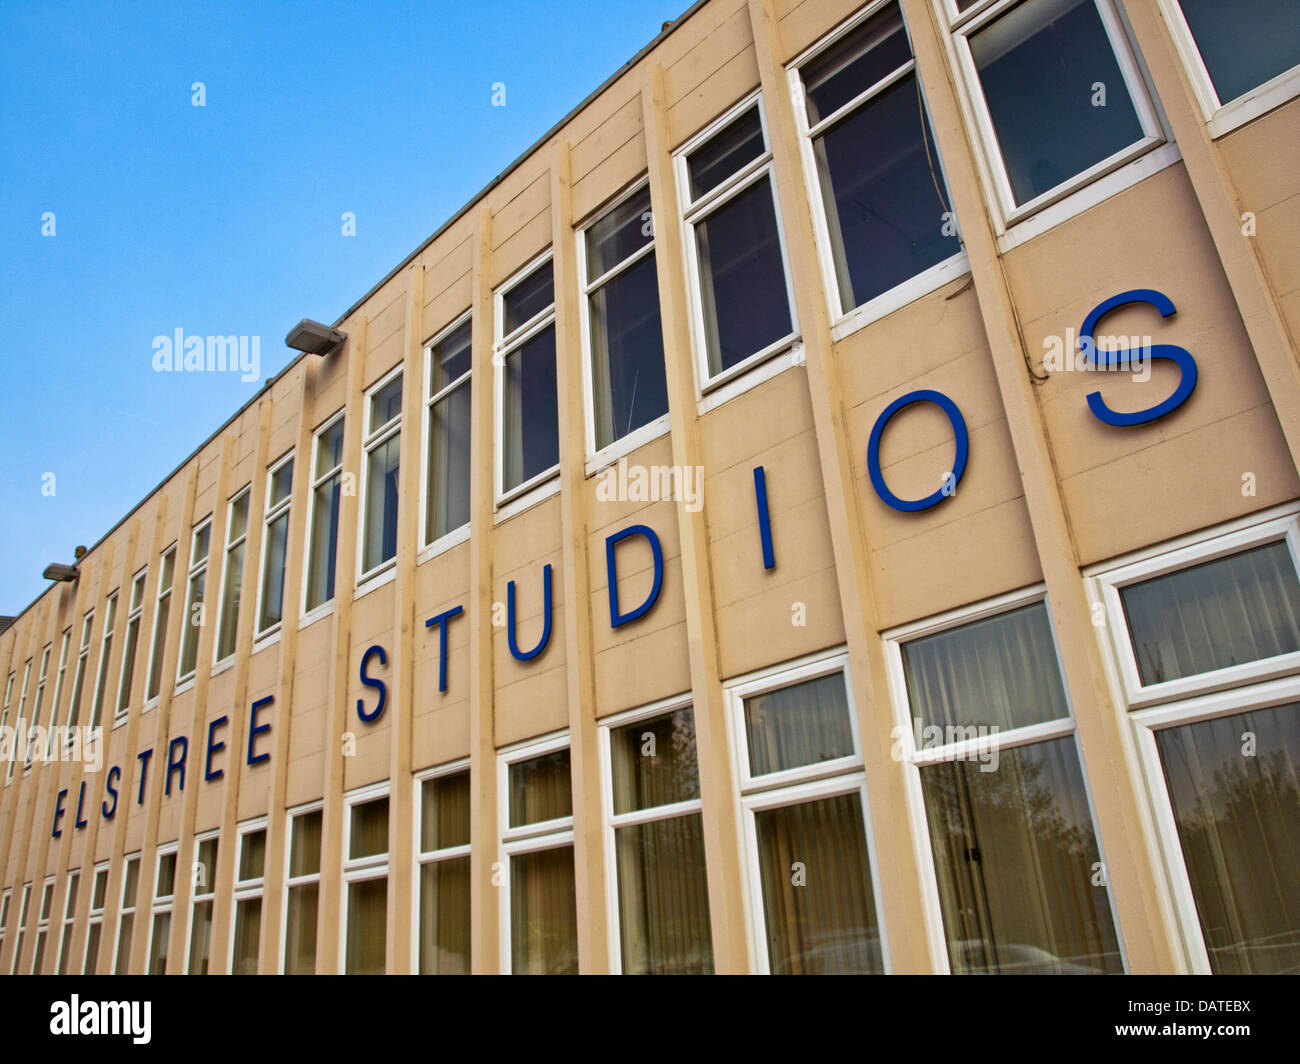 Elstree Studios, Borehamwood, Hertfordshire, England, United Kingdom Stock Photo